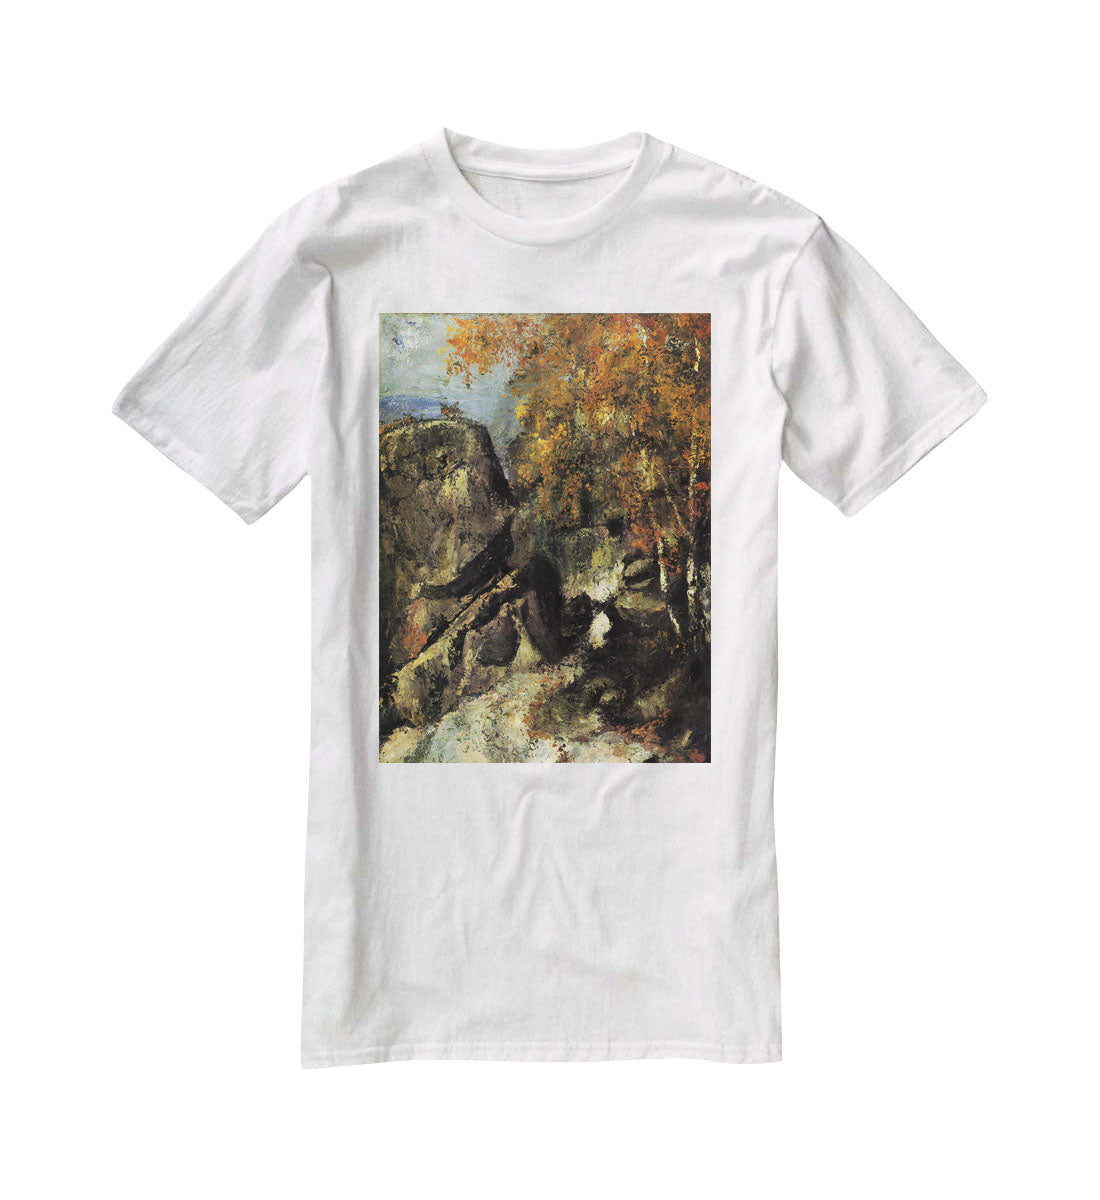 Rocks in Fountanbleu Forest by Cezanne T-Shirt - Canvas Art Rocks - 5